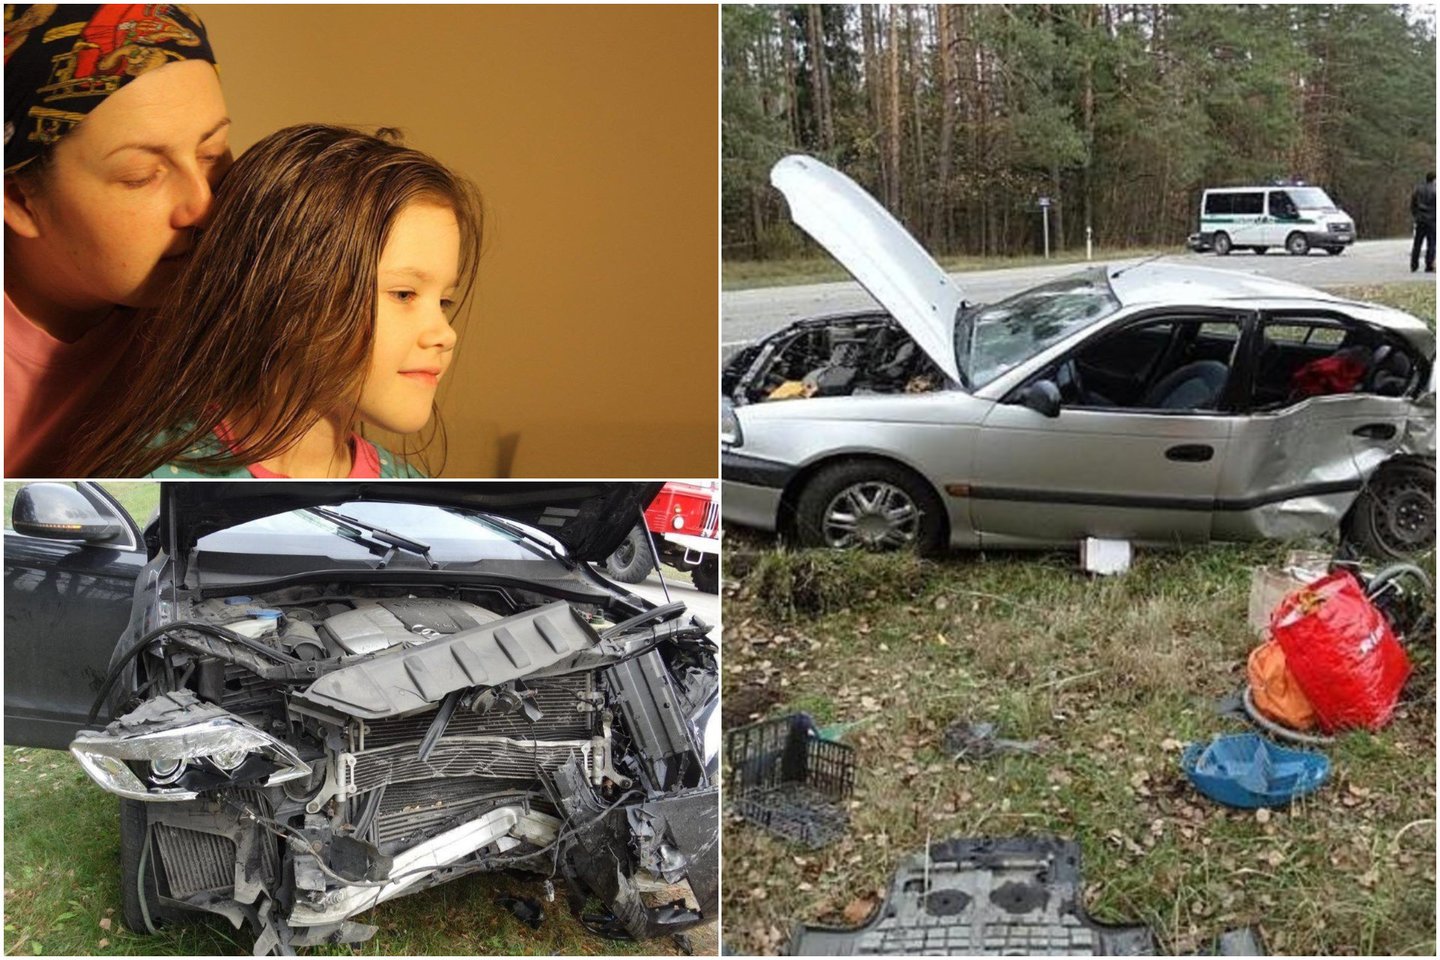  Po dukters žūties J.Jankauskienė kaltinimų nusikratė tik praėjus daugiau nei 6 metams nuo avarijos. Šiuo metu teisiamas pavojingai vairavęs sostinės verslininkas. <br> Lrytas.lt koliažas